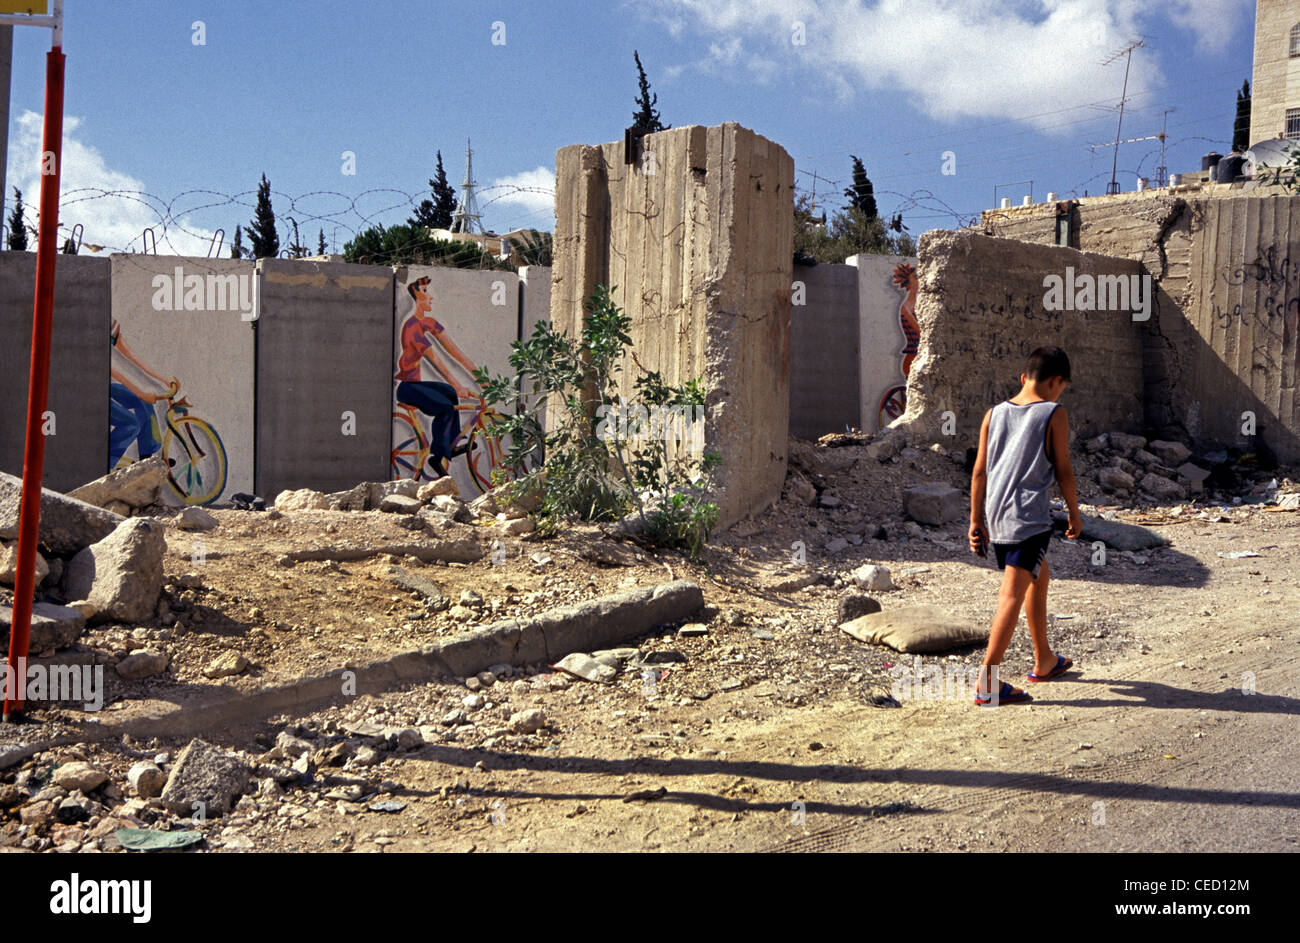 Un enfant palestinien passe devant la barrière de séparation israélienne de Cisjordanie en traversant Abou dis ou Abou dis, une communauté palestinienne appartenant au gouvernorat palestinien de Jérusalem, coupée de Jérusalem par le mur de séparation construit par Israël Banque D'Images